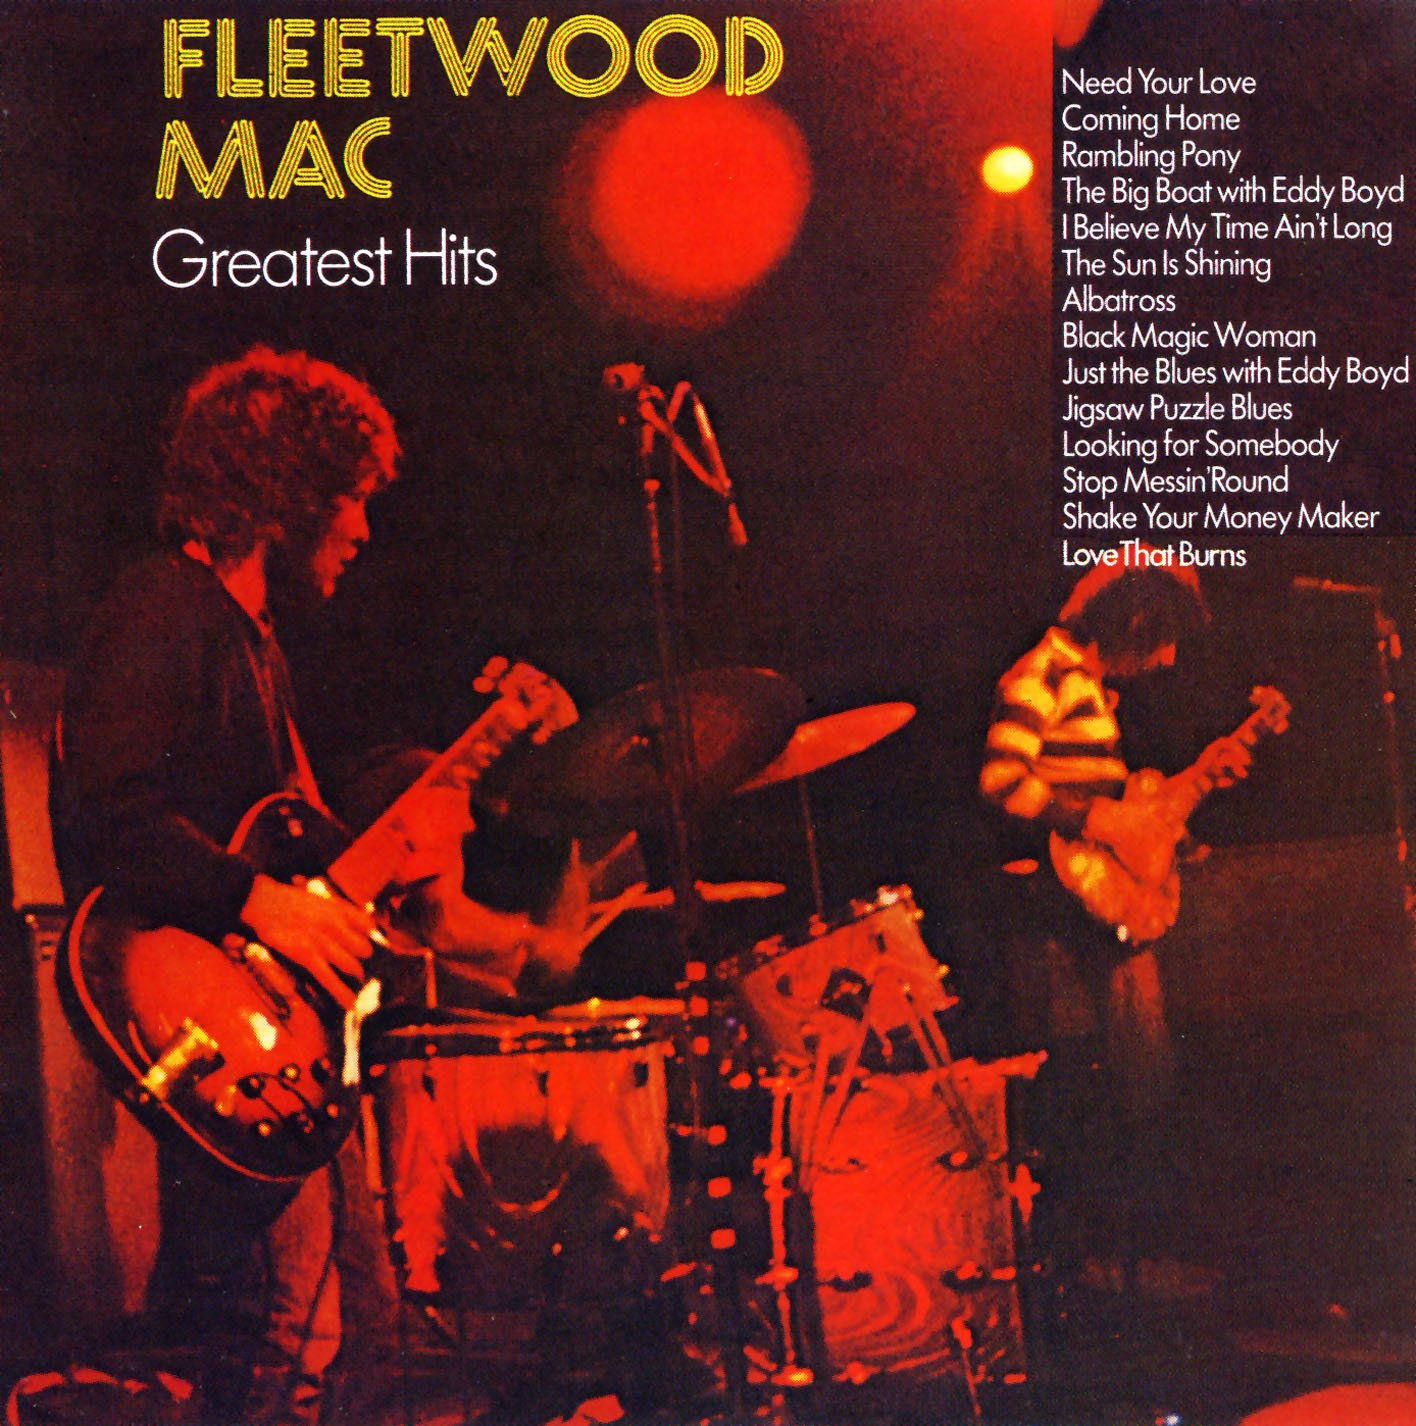 Fleetwood Mac’s Greatest Hits